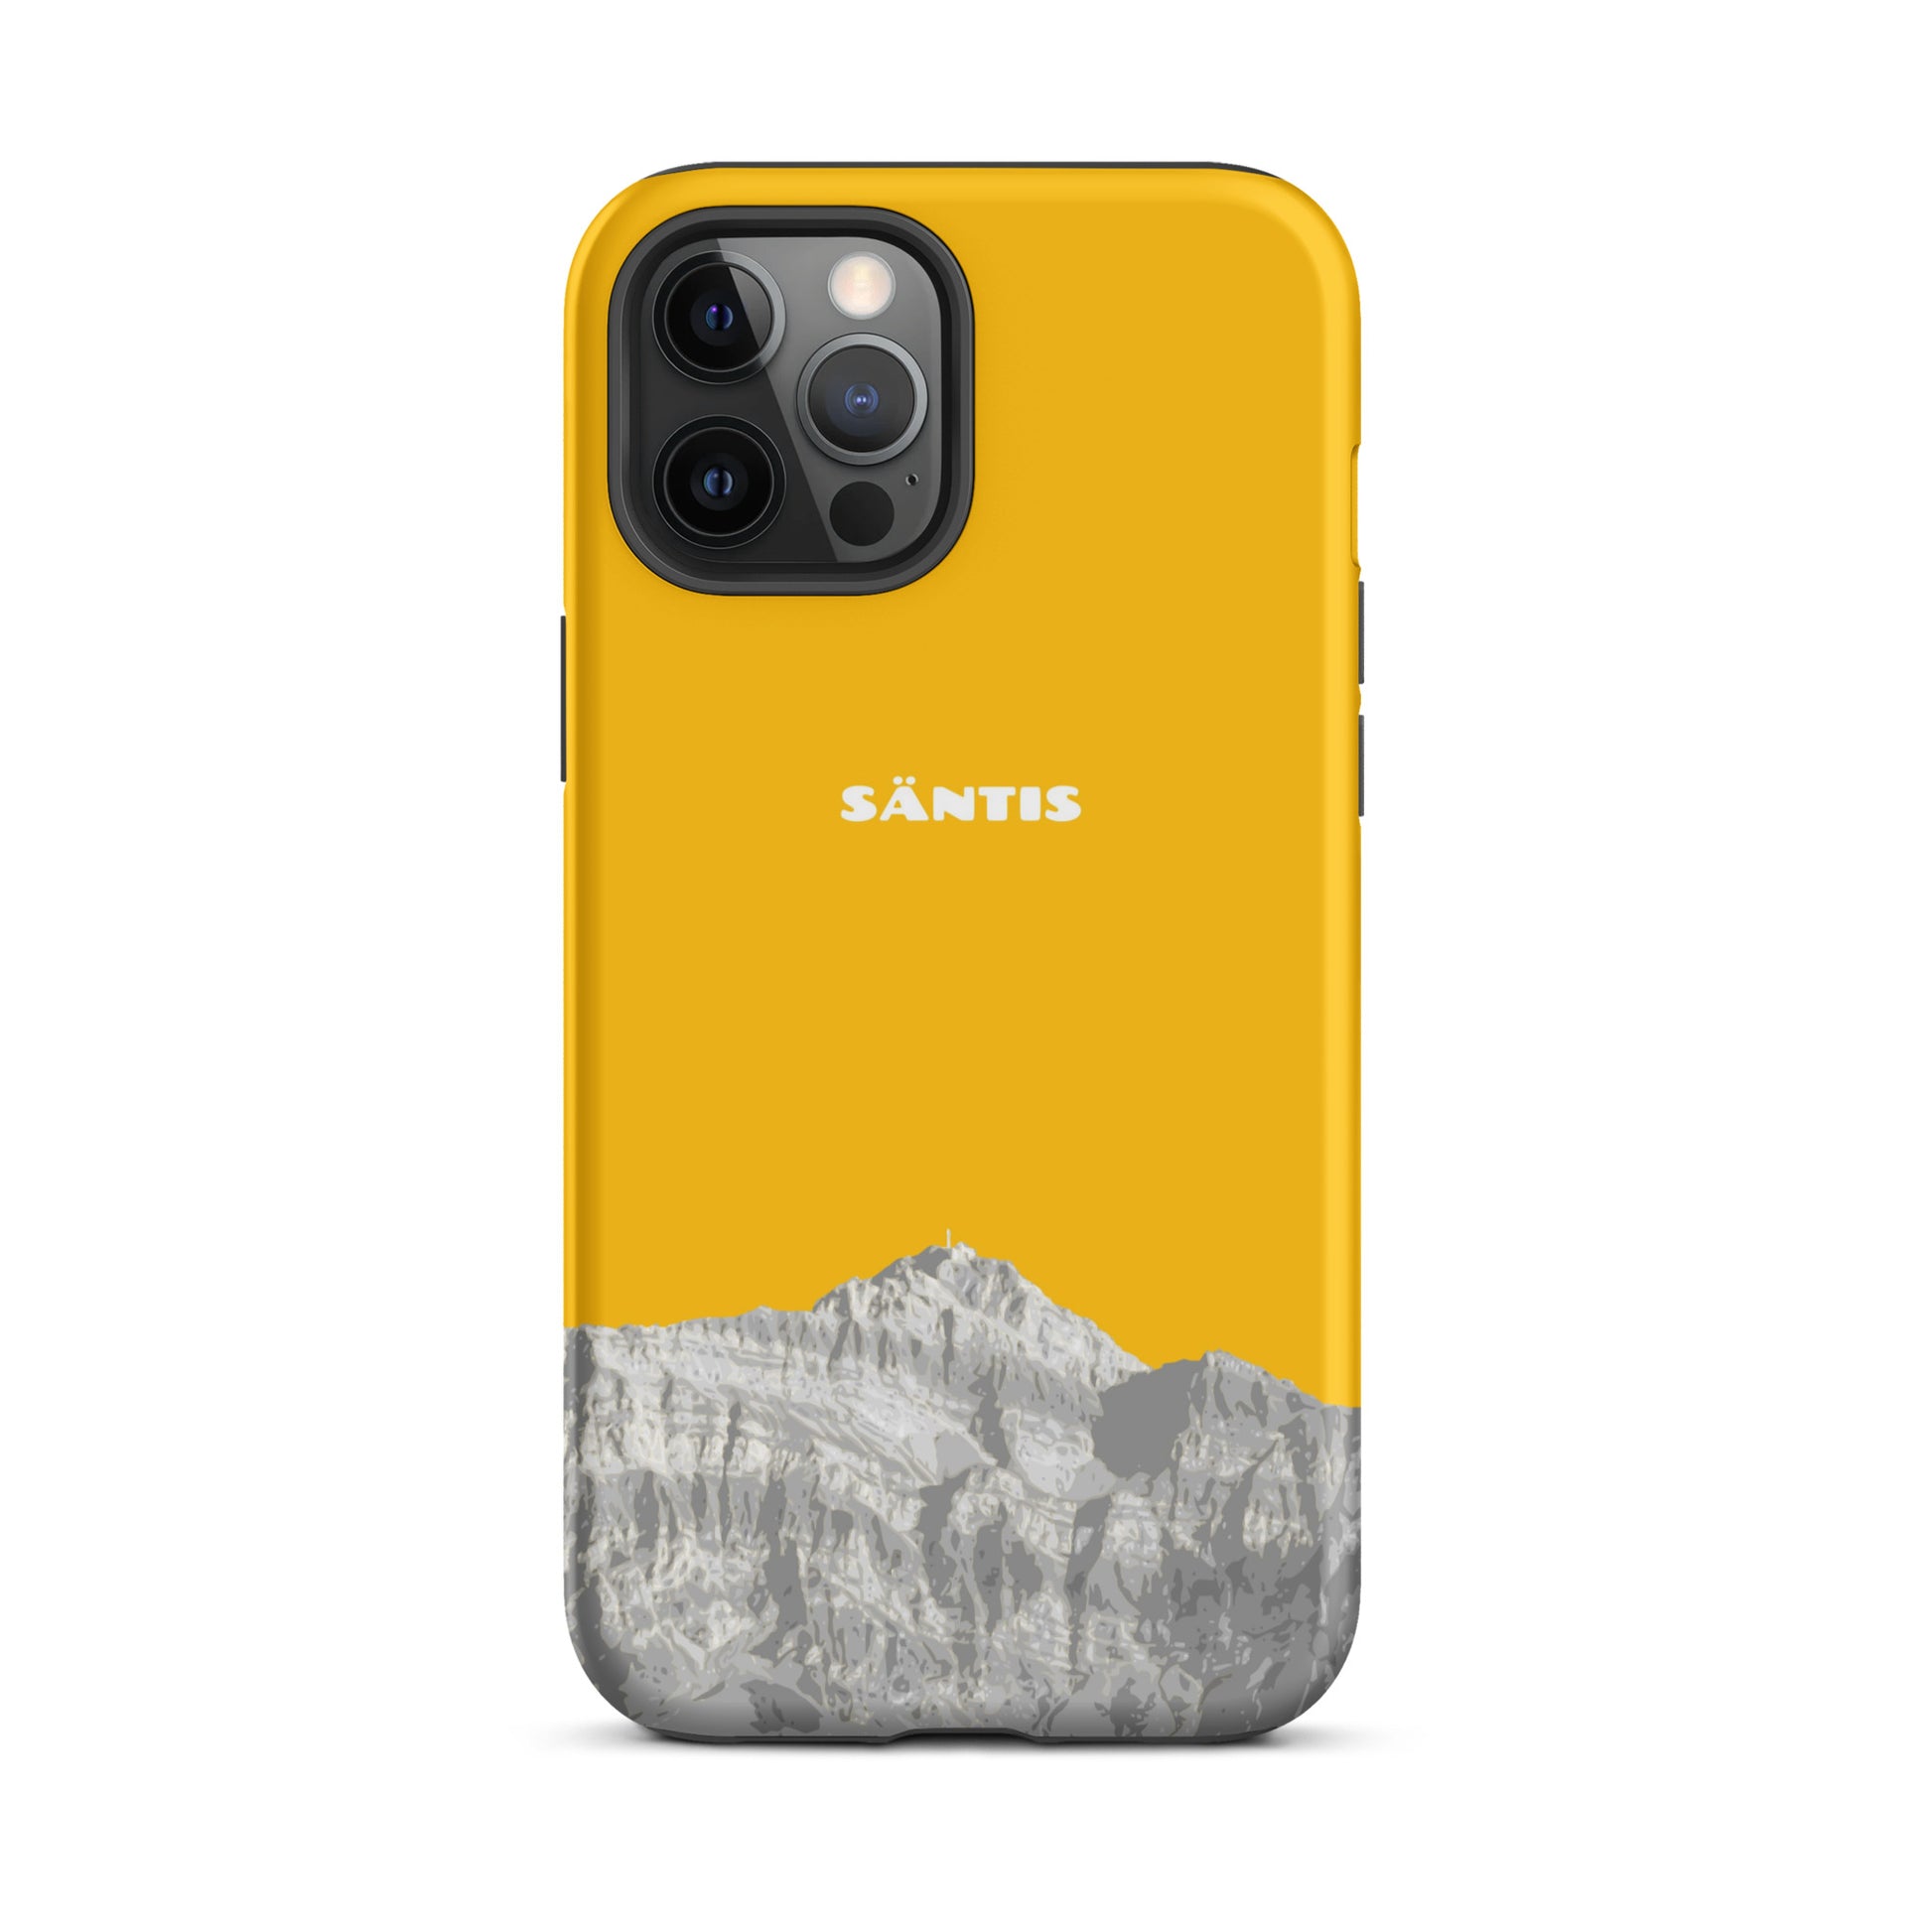 Hülle für das iPhone 12 Pro Max von Apple in der Farbe Goldgelb, dass den Säntis im Alpstein zeigt.